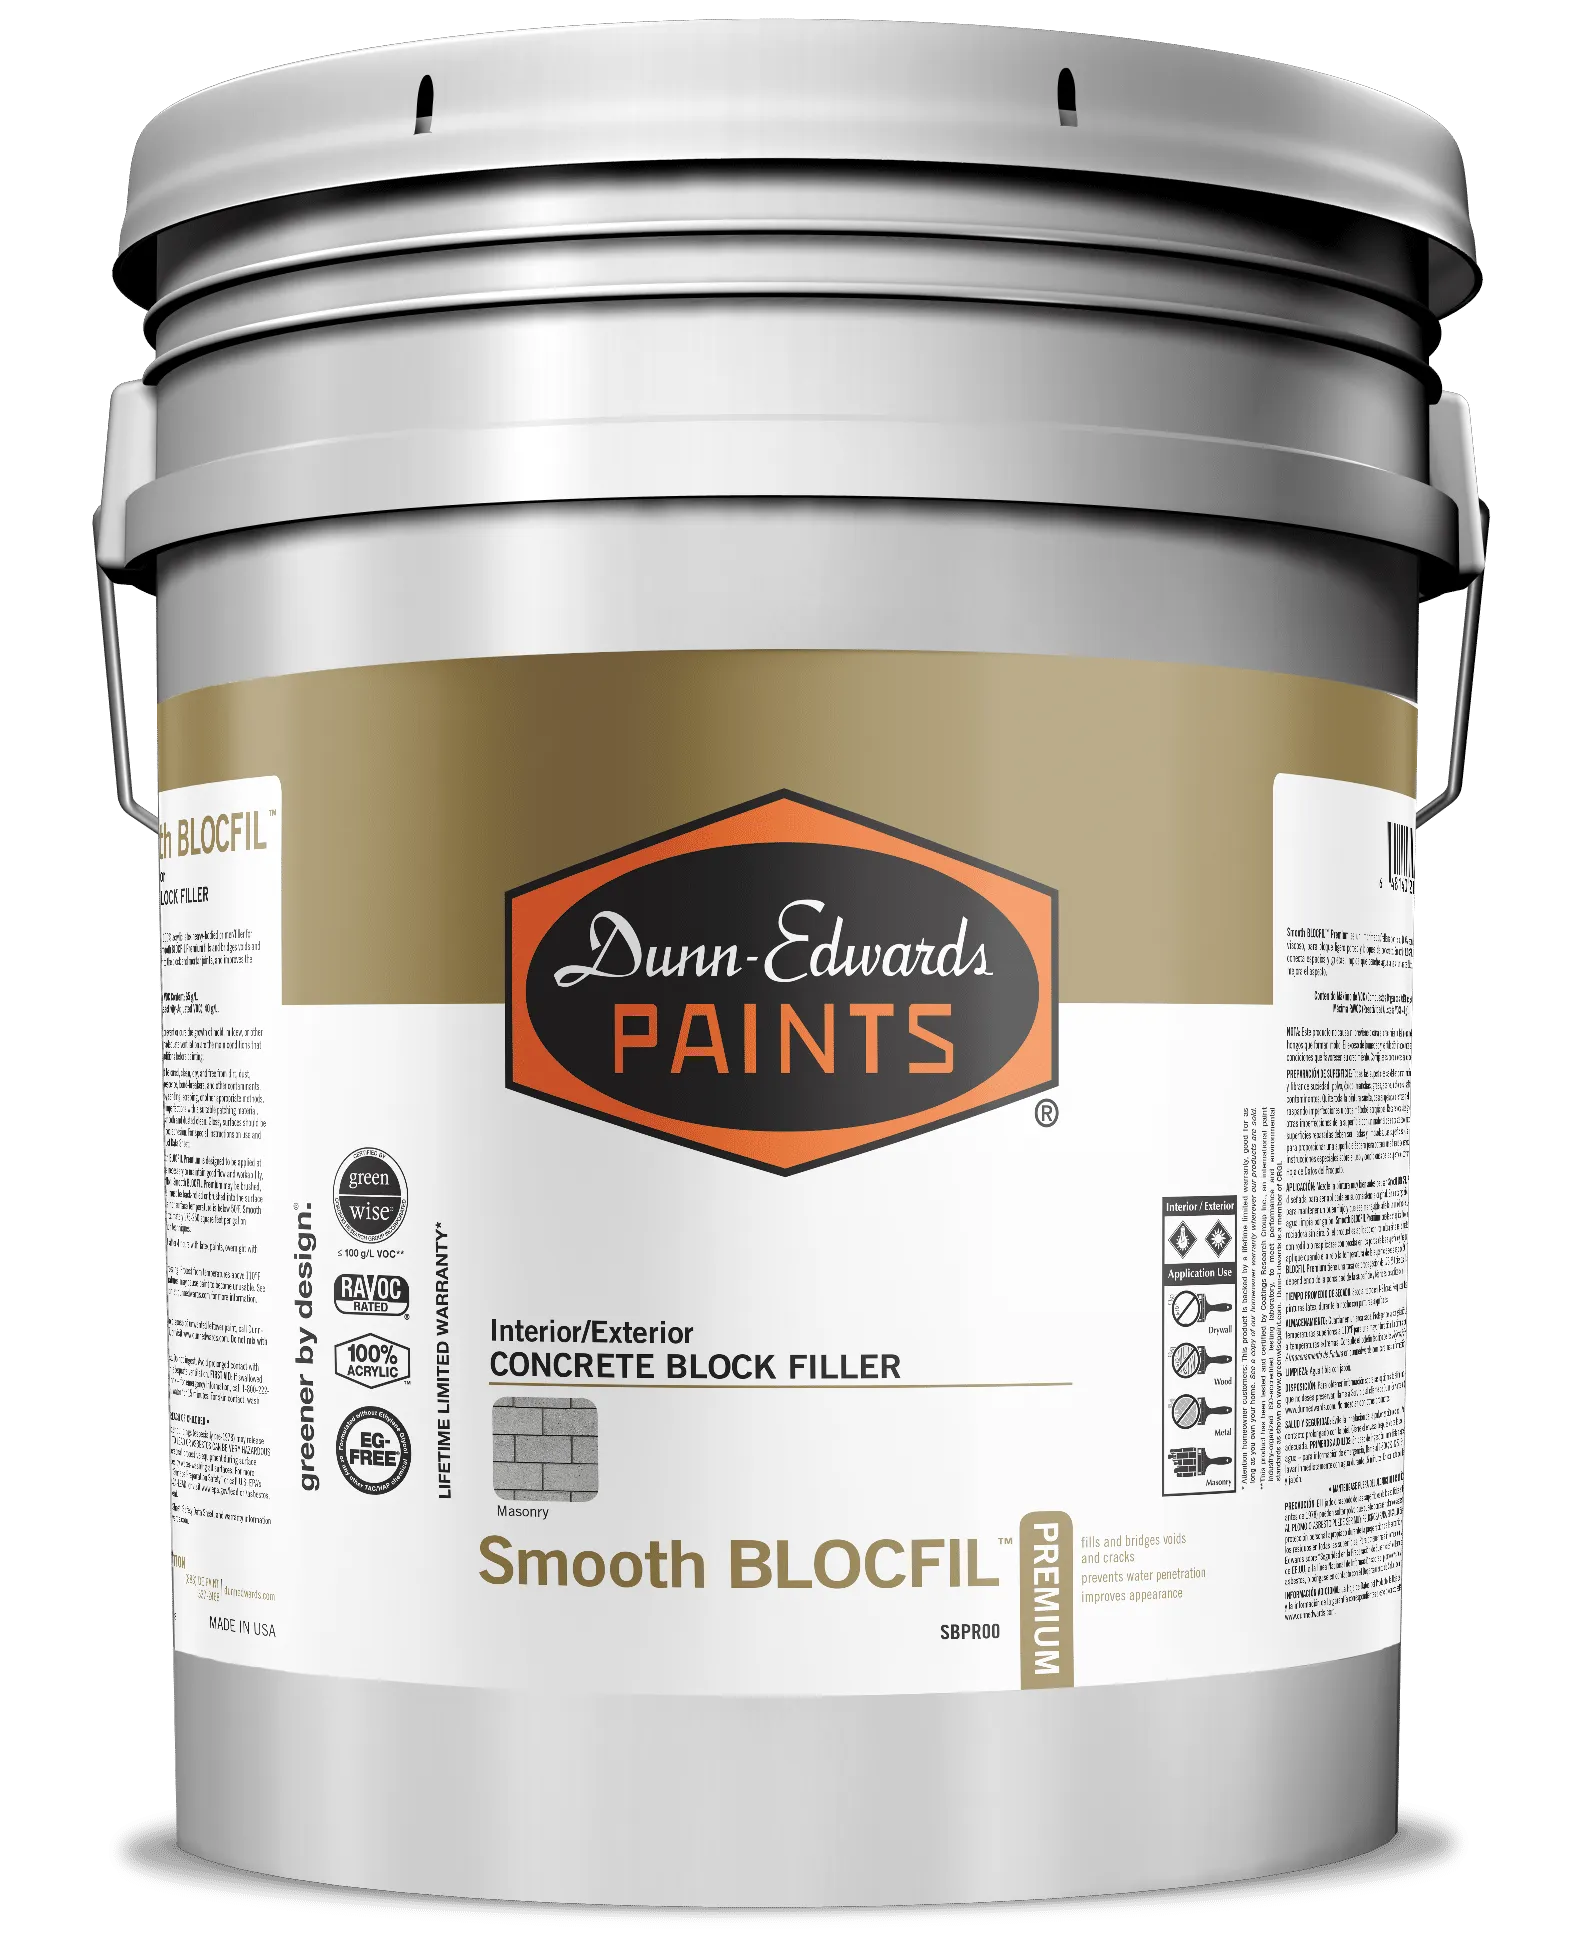 Smooth BLOCFIL™ Premium Interior/Exterior Concrete Block Filler Can